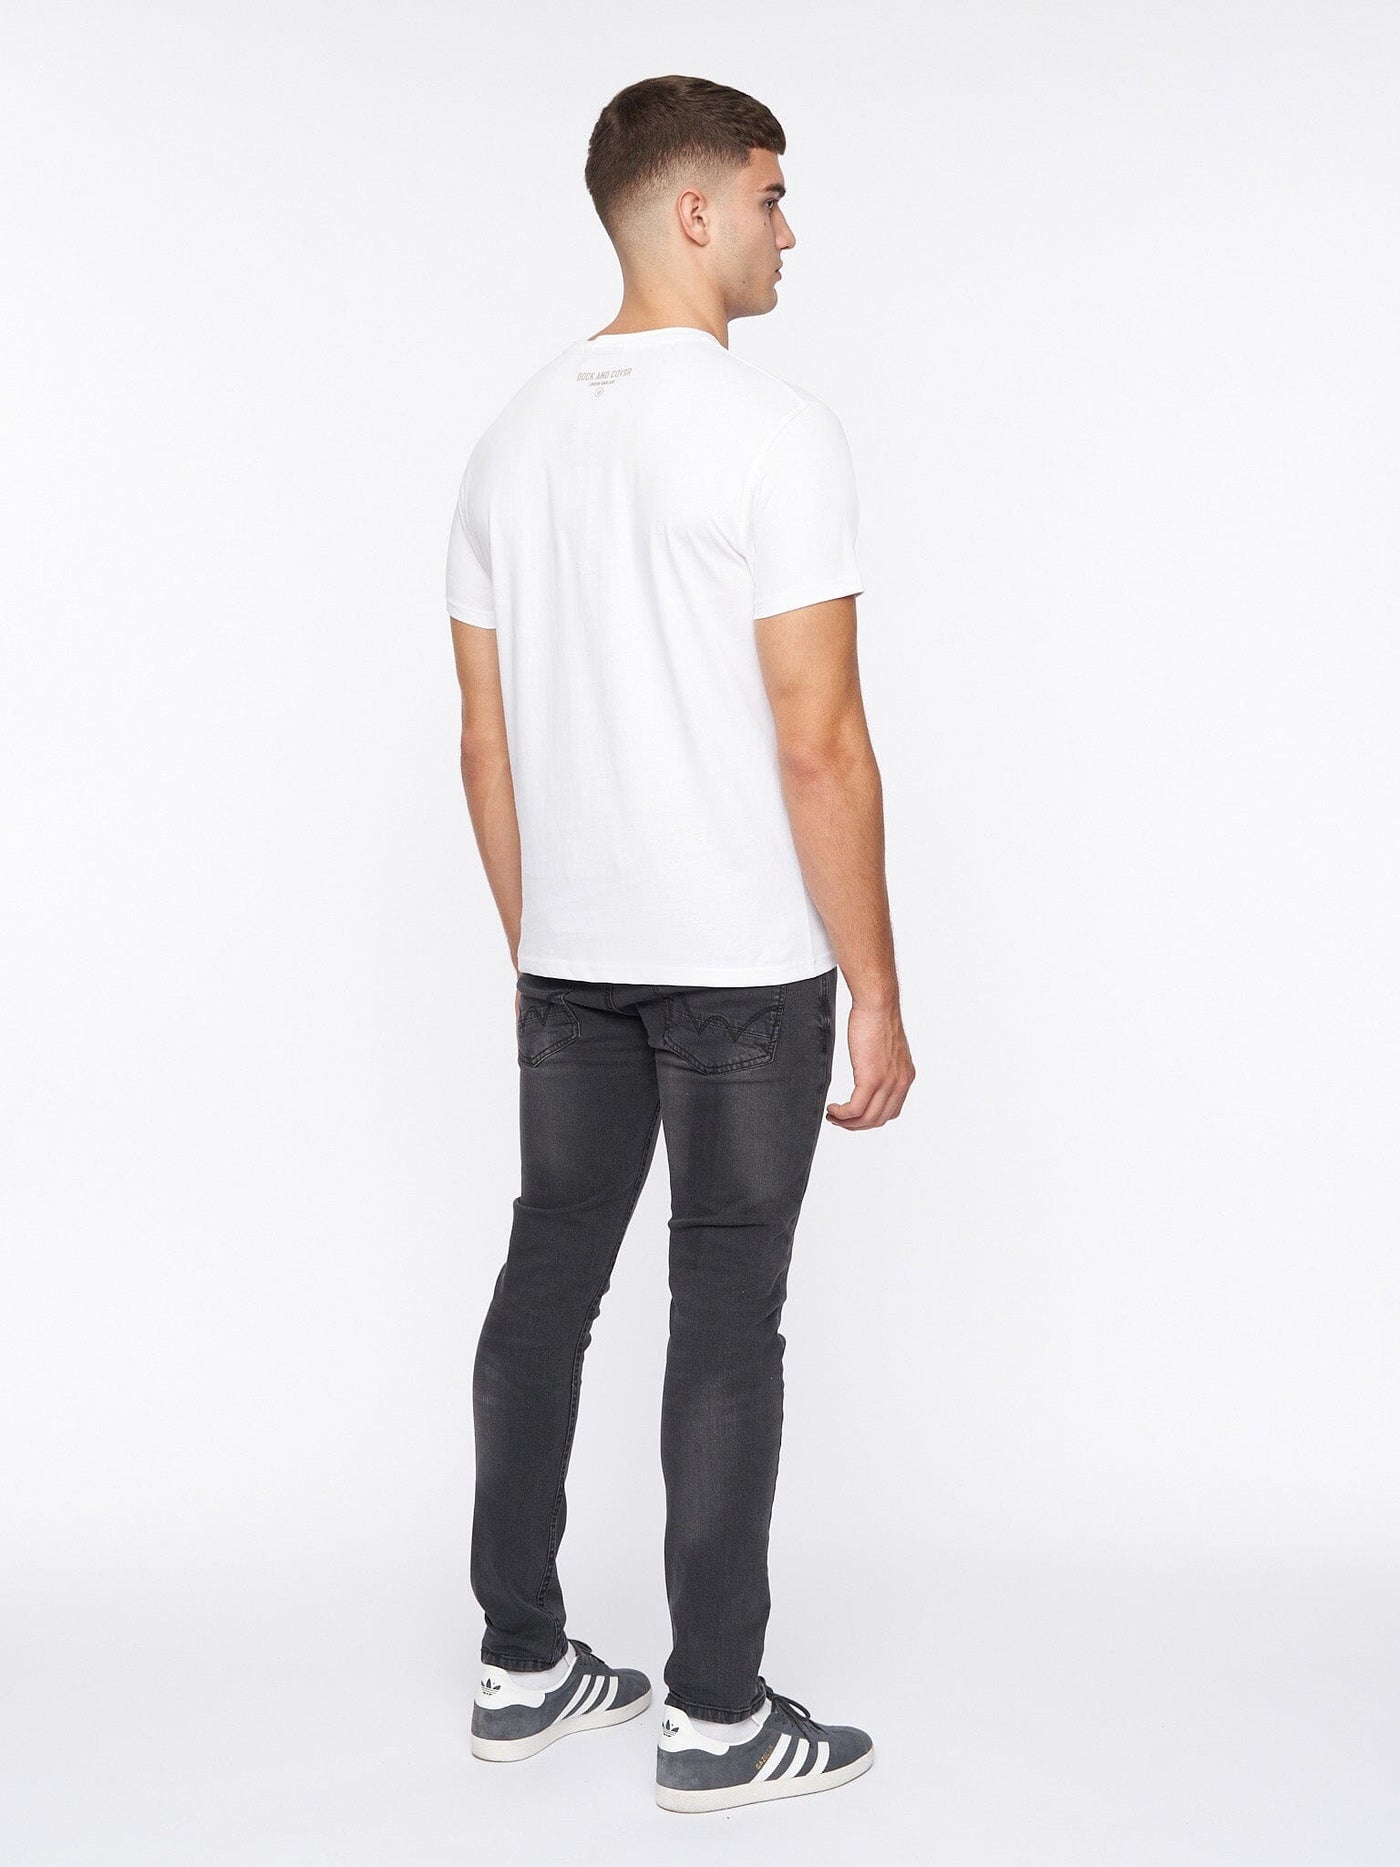 New Milgate T-Shirt White